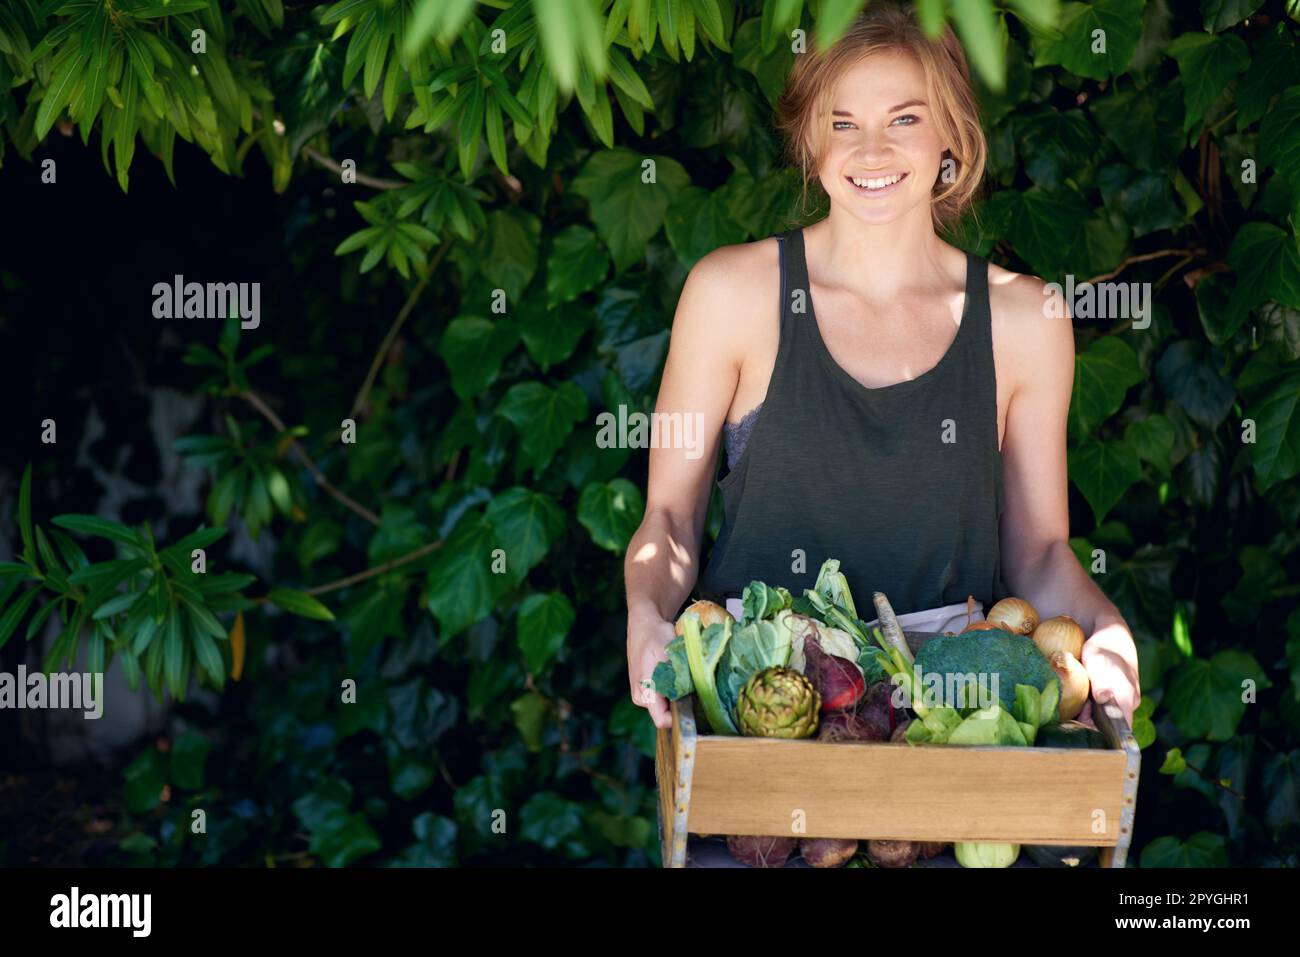 Sparen Sie auf einfache Weise Geld. Eine junge Frau, die eine Kiste Gemüse im Freien hält. Stockfoto